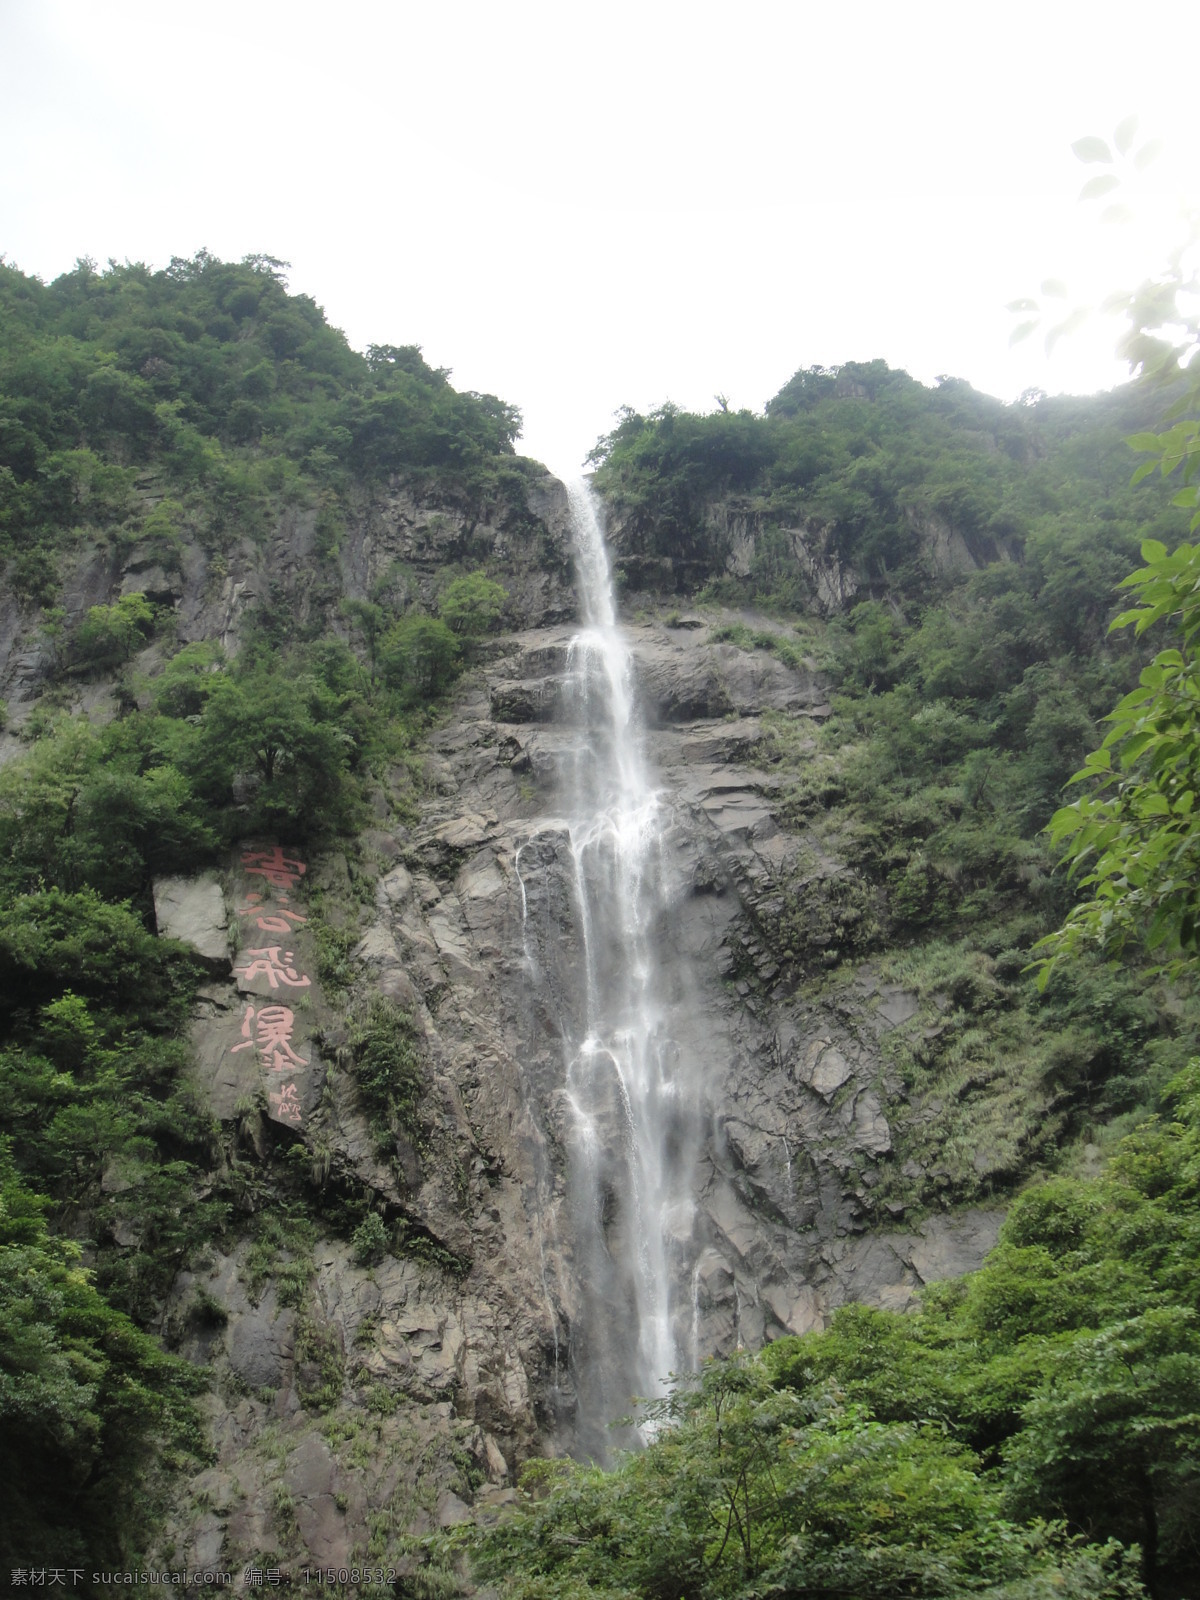 明月山瀑布 江西宜春 明月山 瀑布 流水 高山 自然风景 自然景观